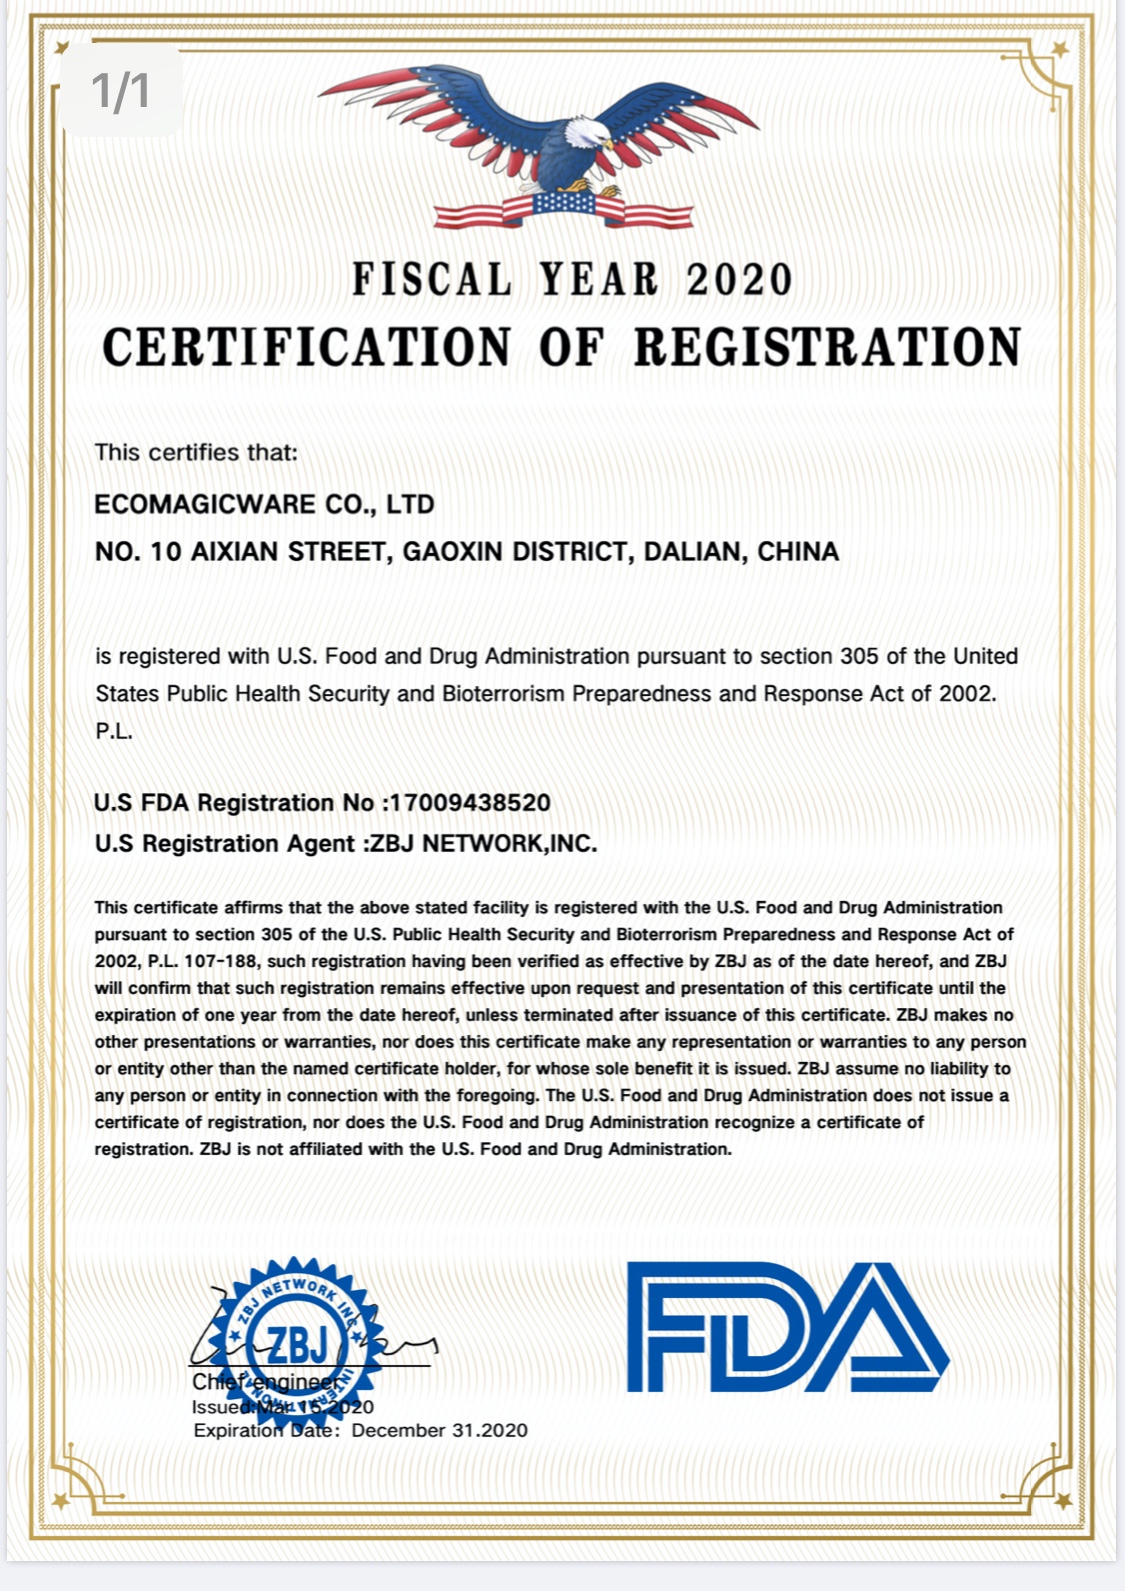 Ecomagicware sai FDA-sertifikaatin